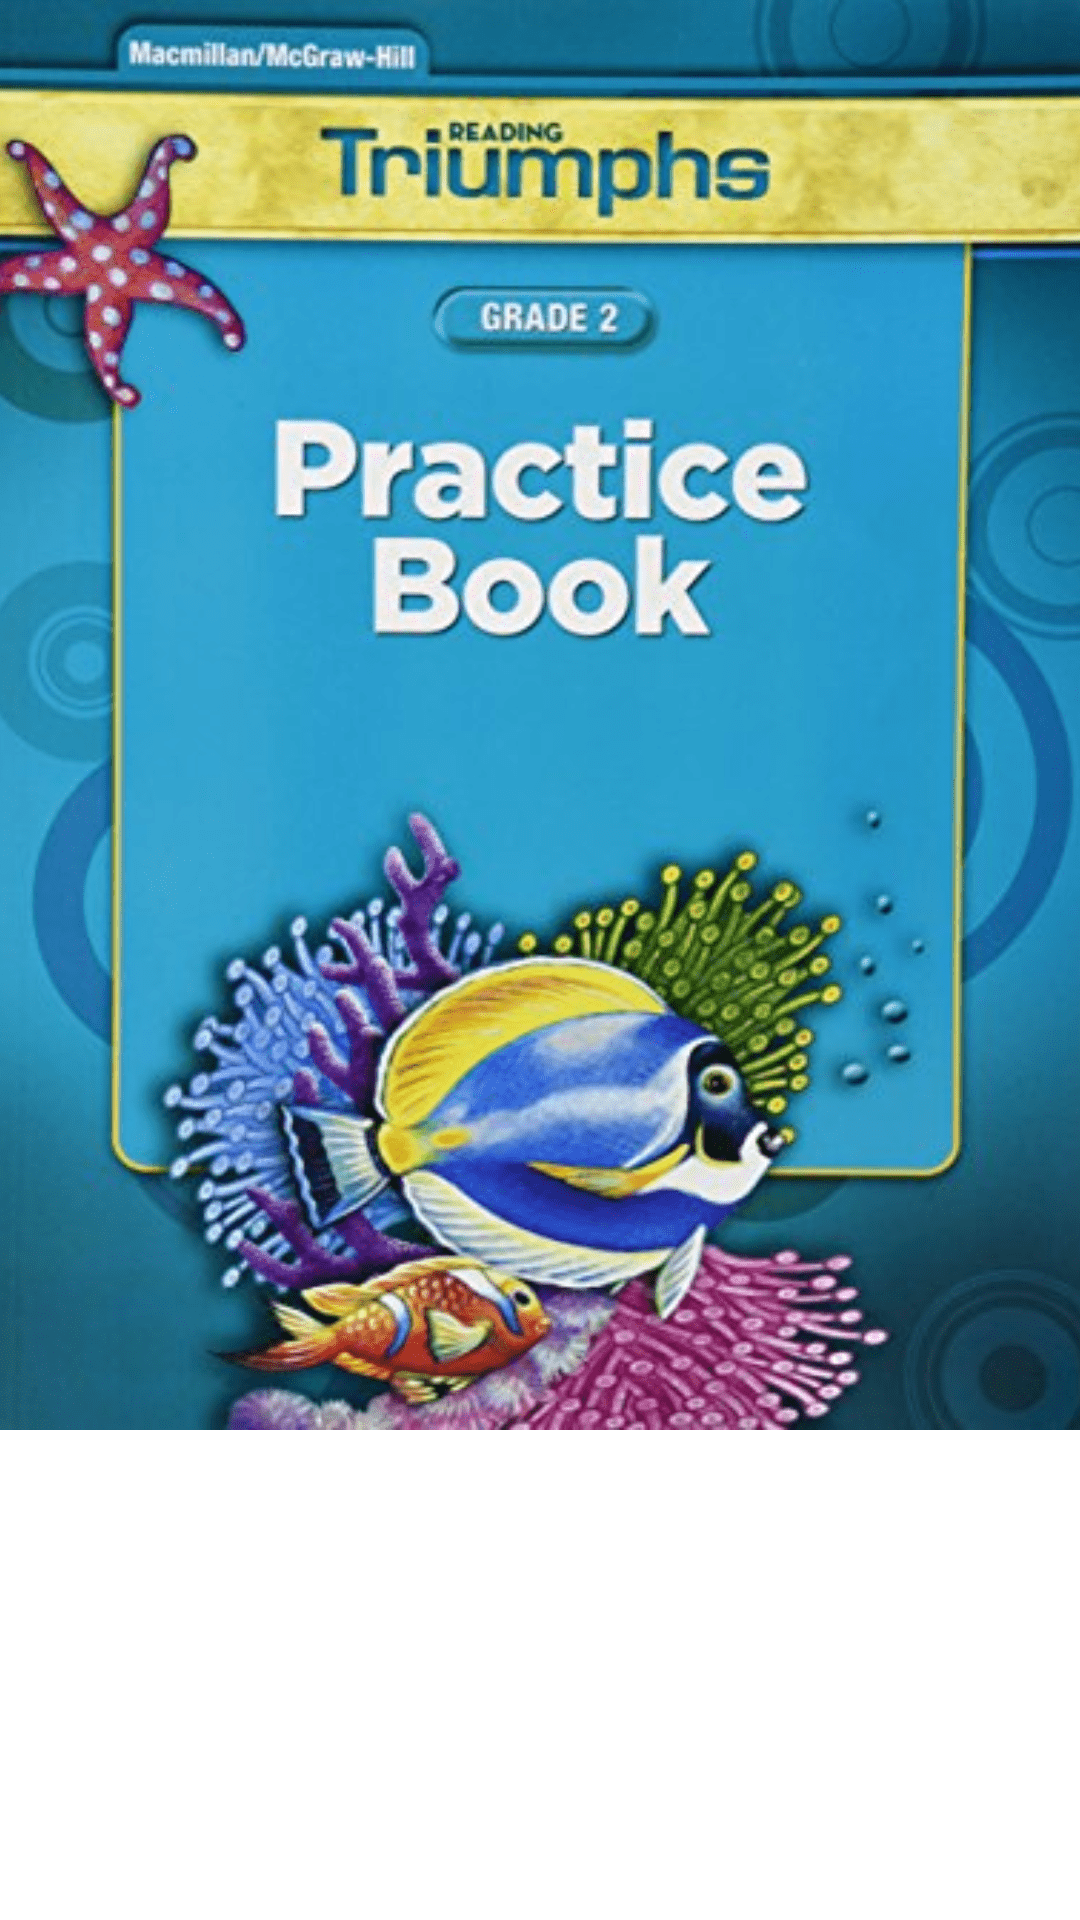 Practice Book: Grade 2